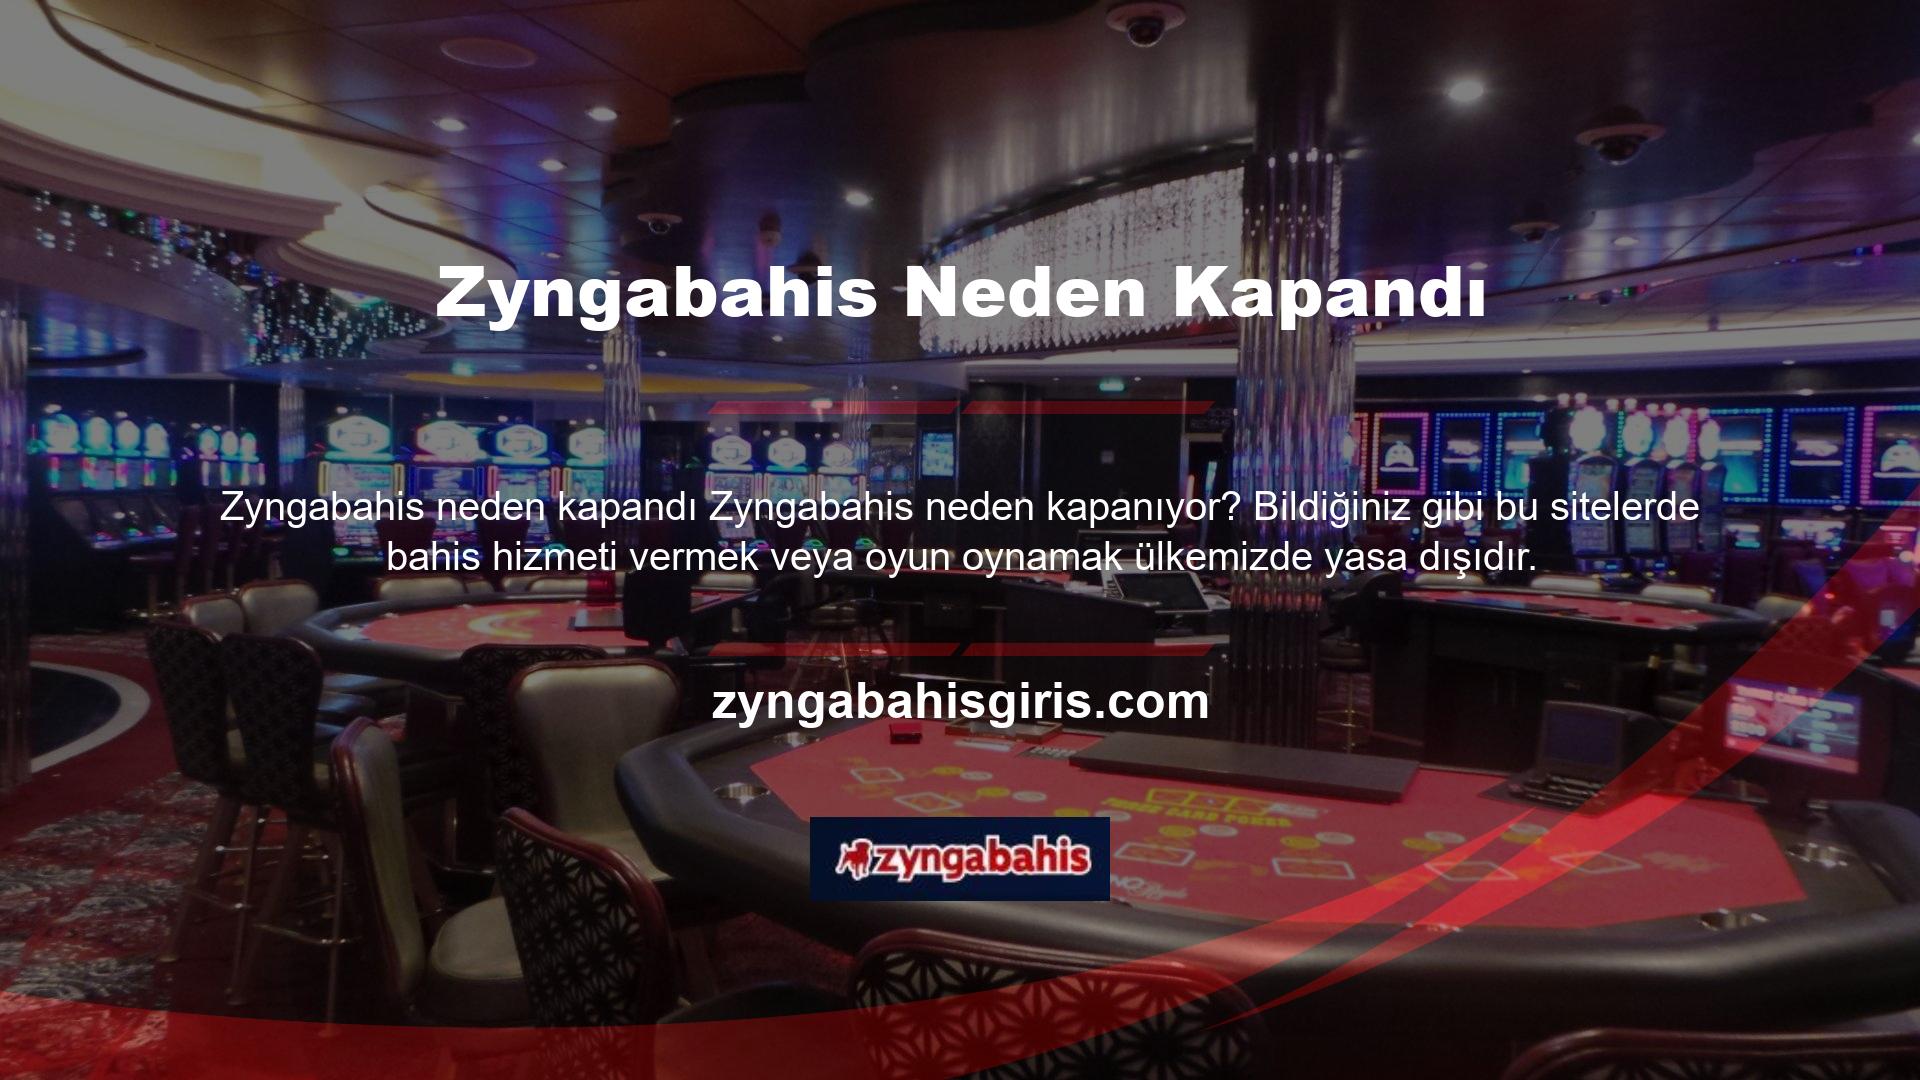 Bu nedenle Zyngabahis gibi başka bir casino sitesinin adresi biliniyorsa, güvenilir olup olmadığına bakılmaksızın o site kapatılacaktır